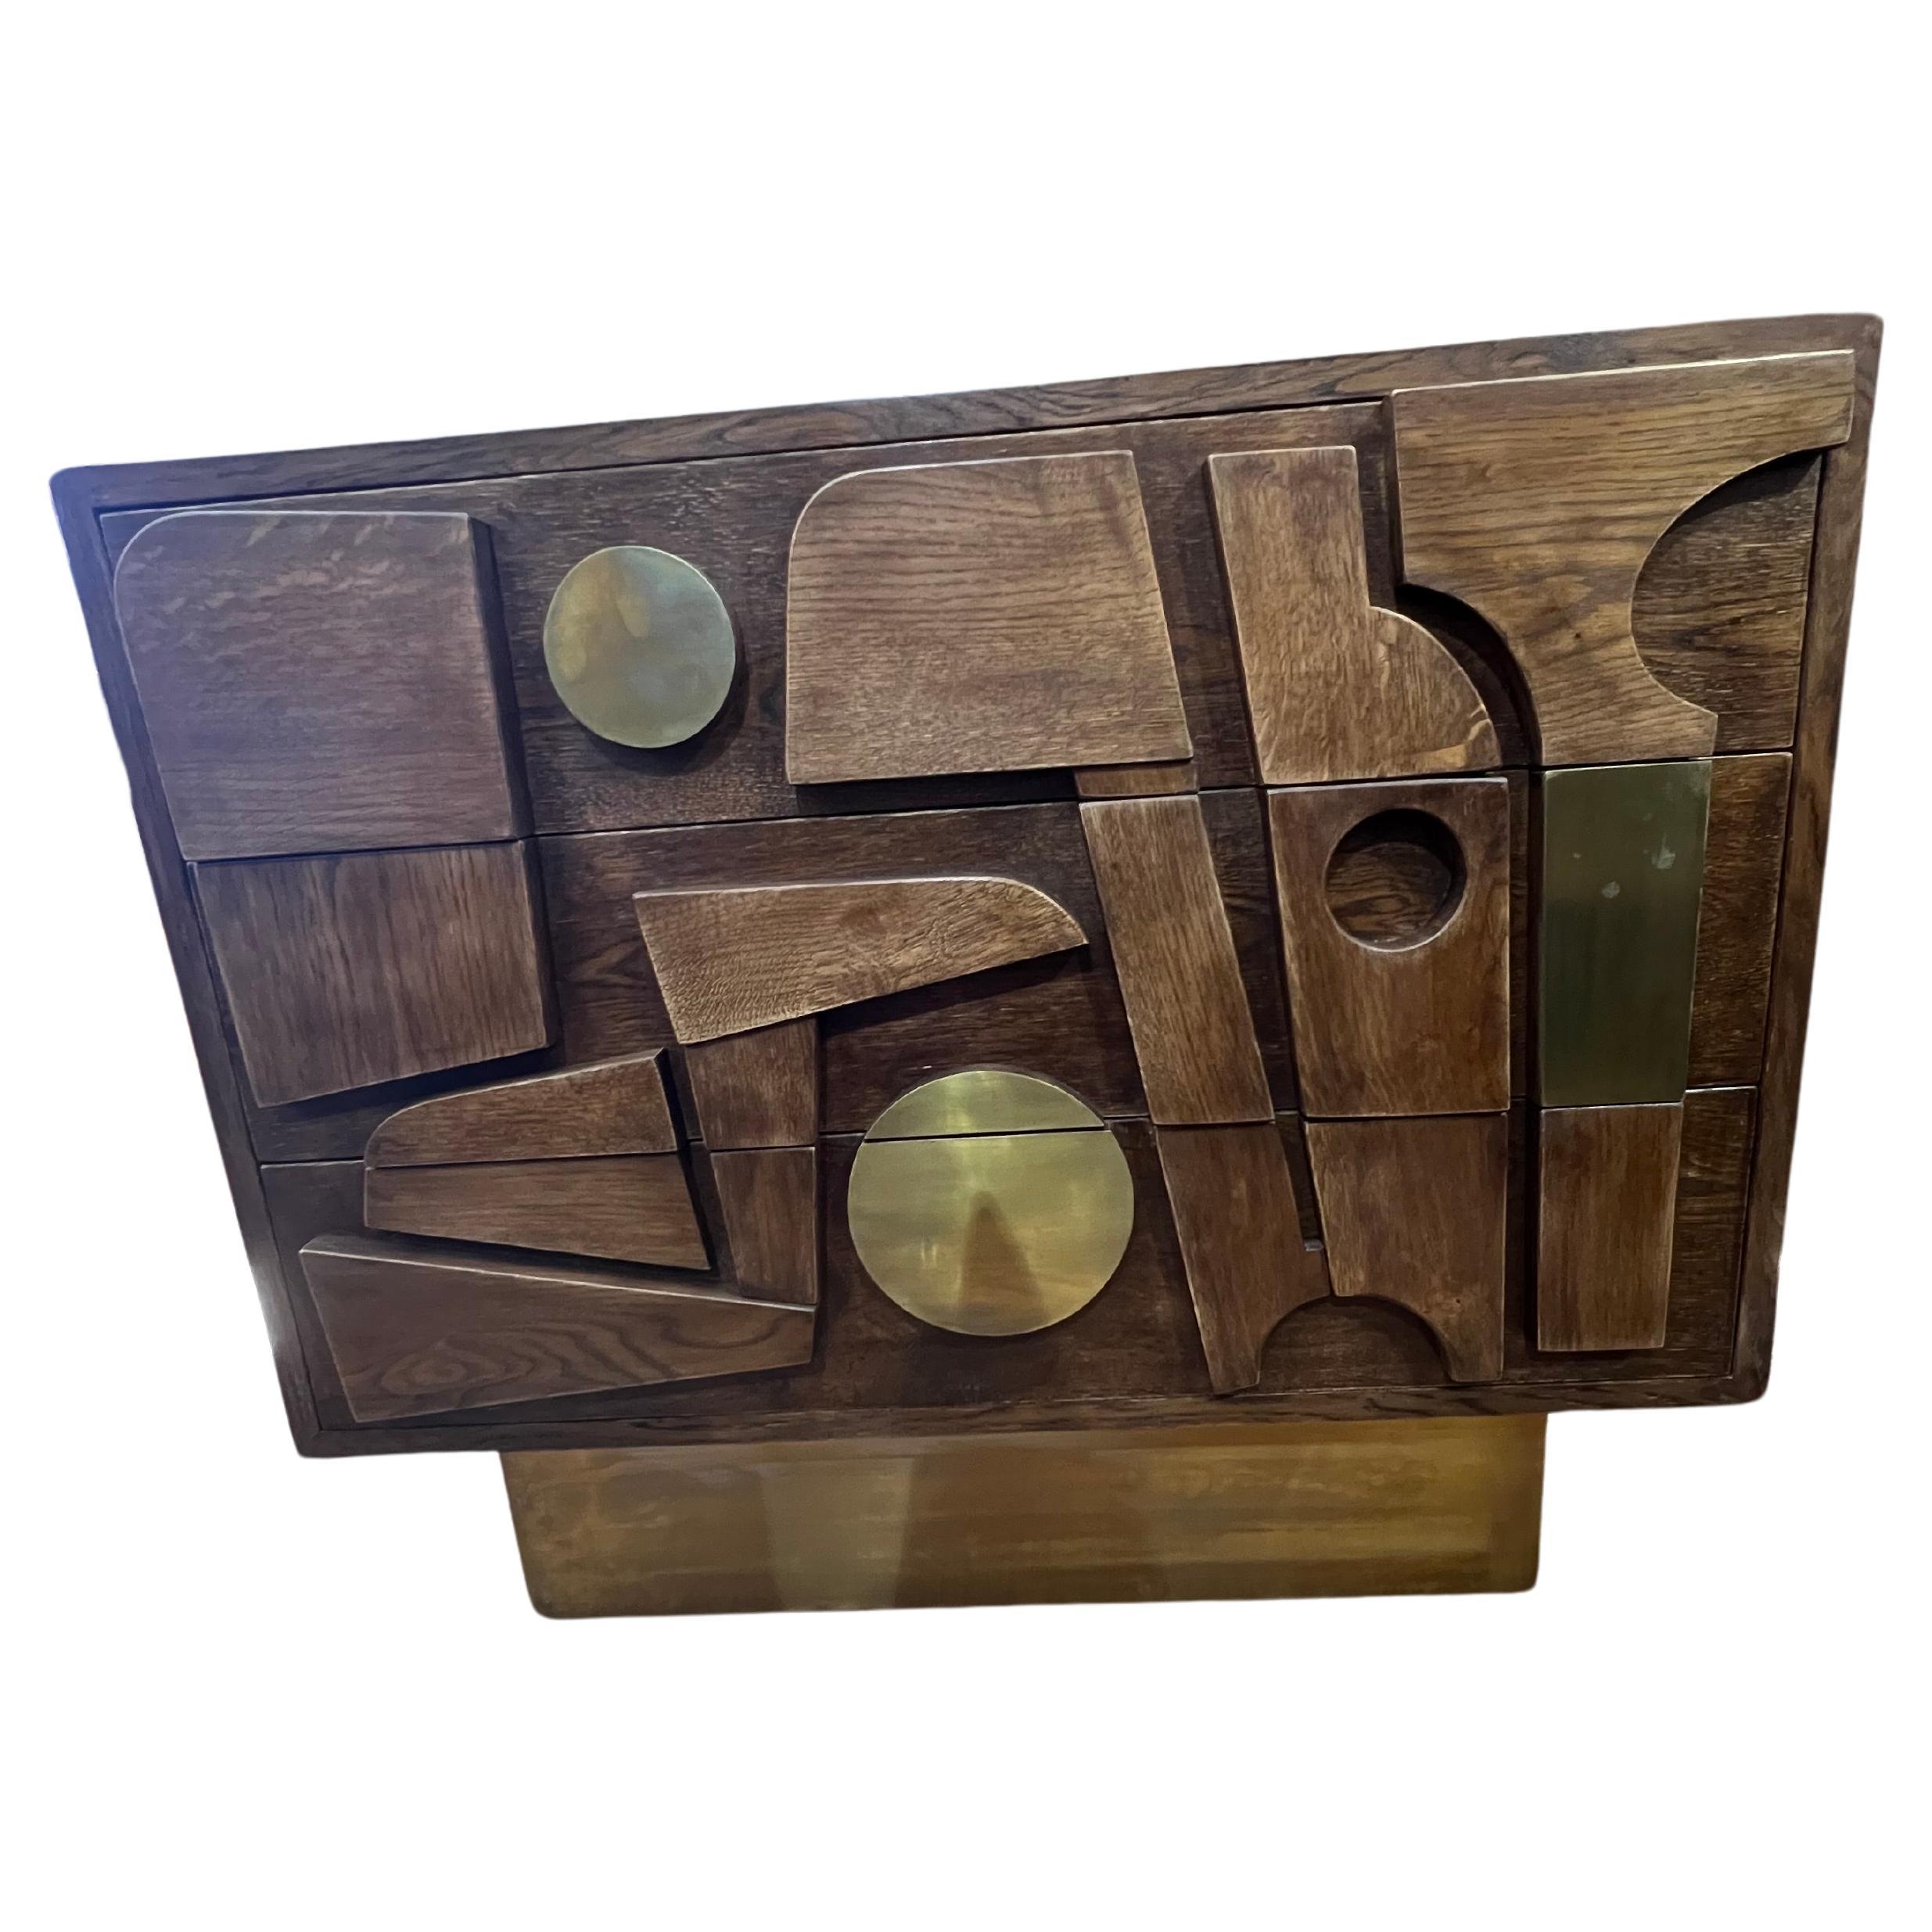 Toll aussehende italienische Vintage Kommode aus hochwertigem Eichenholz. Top ist Display schöne Holzmaserung. Die Kommode hat 3 geräumige Schubladen und ruht auf einem rechteckigen Messingsockel. Die Front der Schubladen ist mit geometrischen